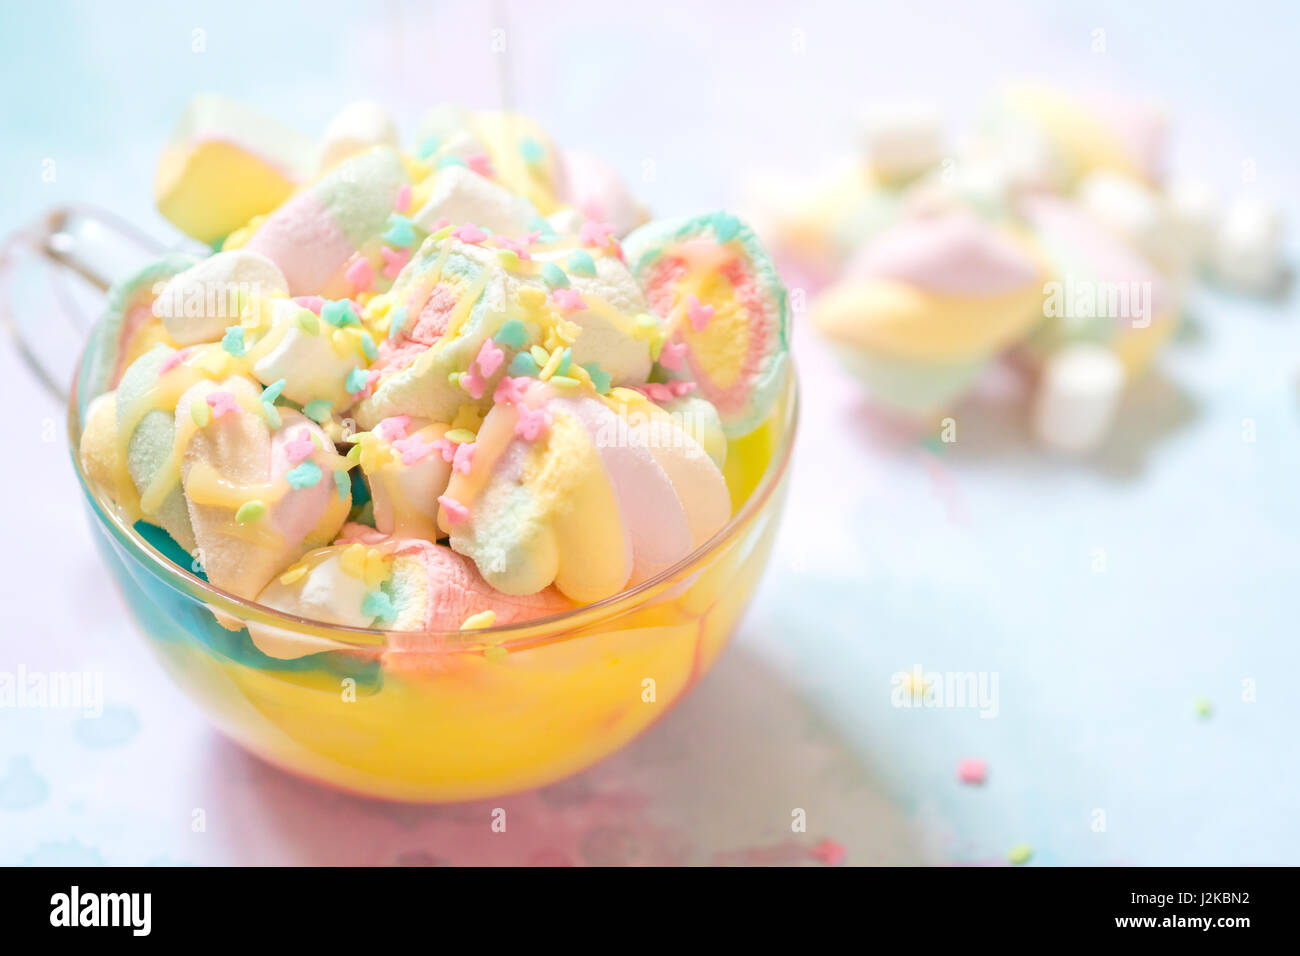 Licorne De la nourriture. Rainbow chocolat chaud avec guimauves colorées sur une table Banque D'Images